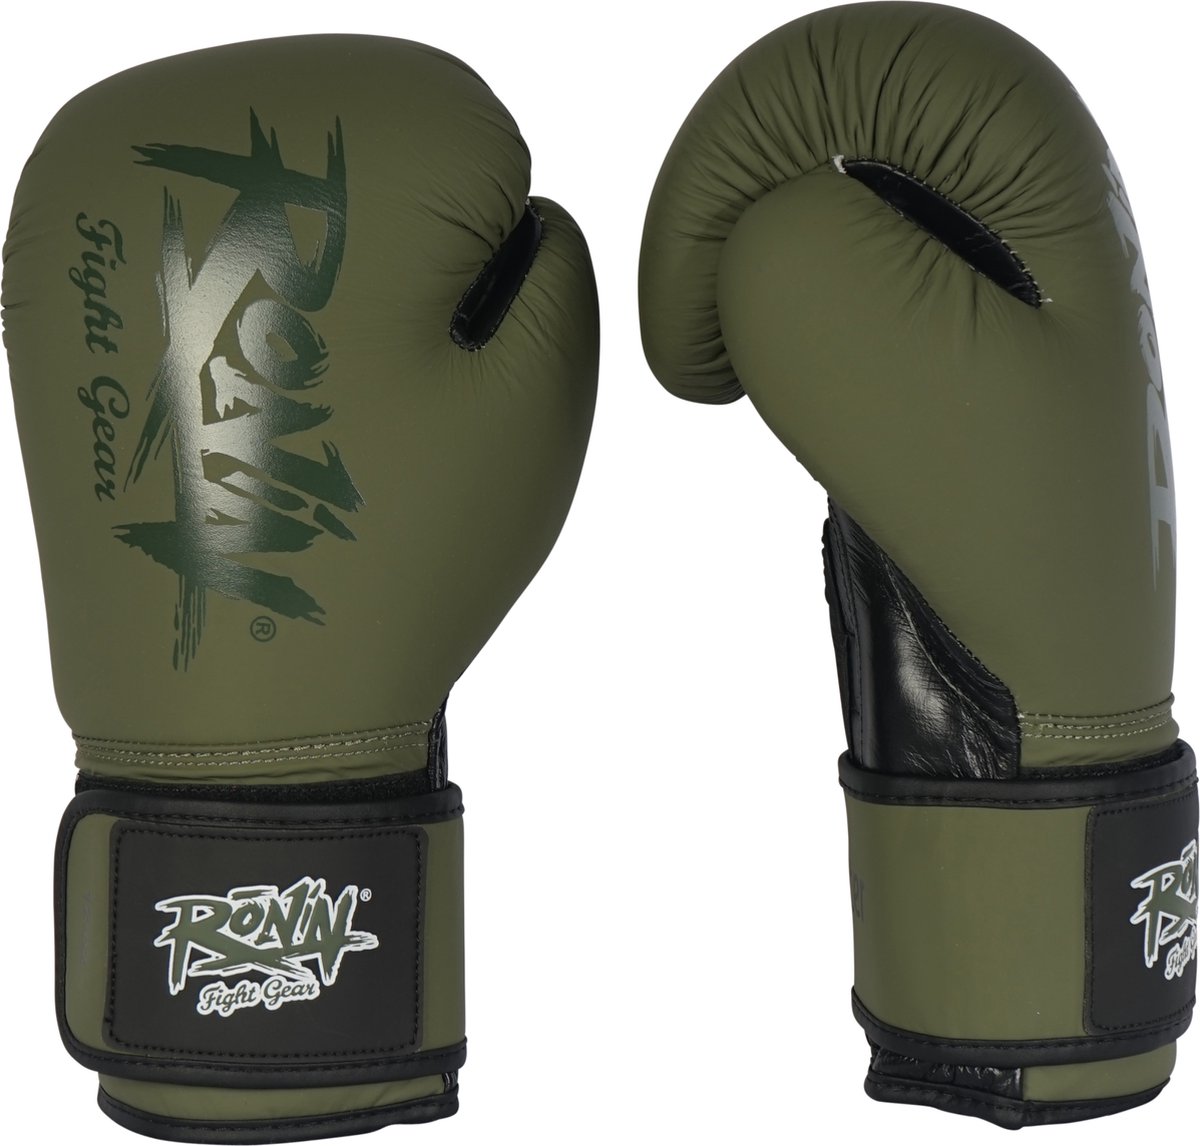 Ronin Fighter Bokshandschoen groen/zwart 18oz